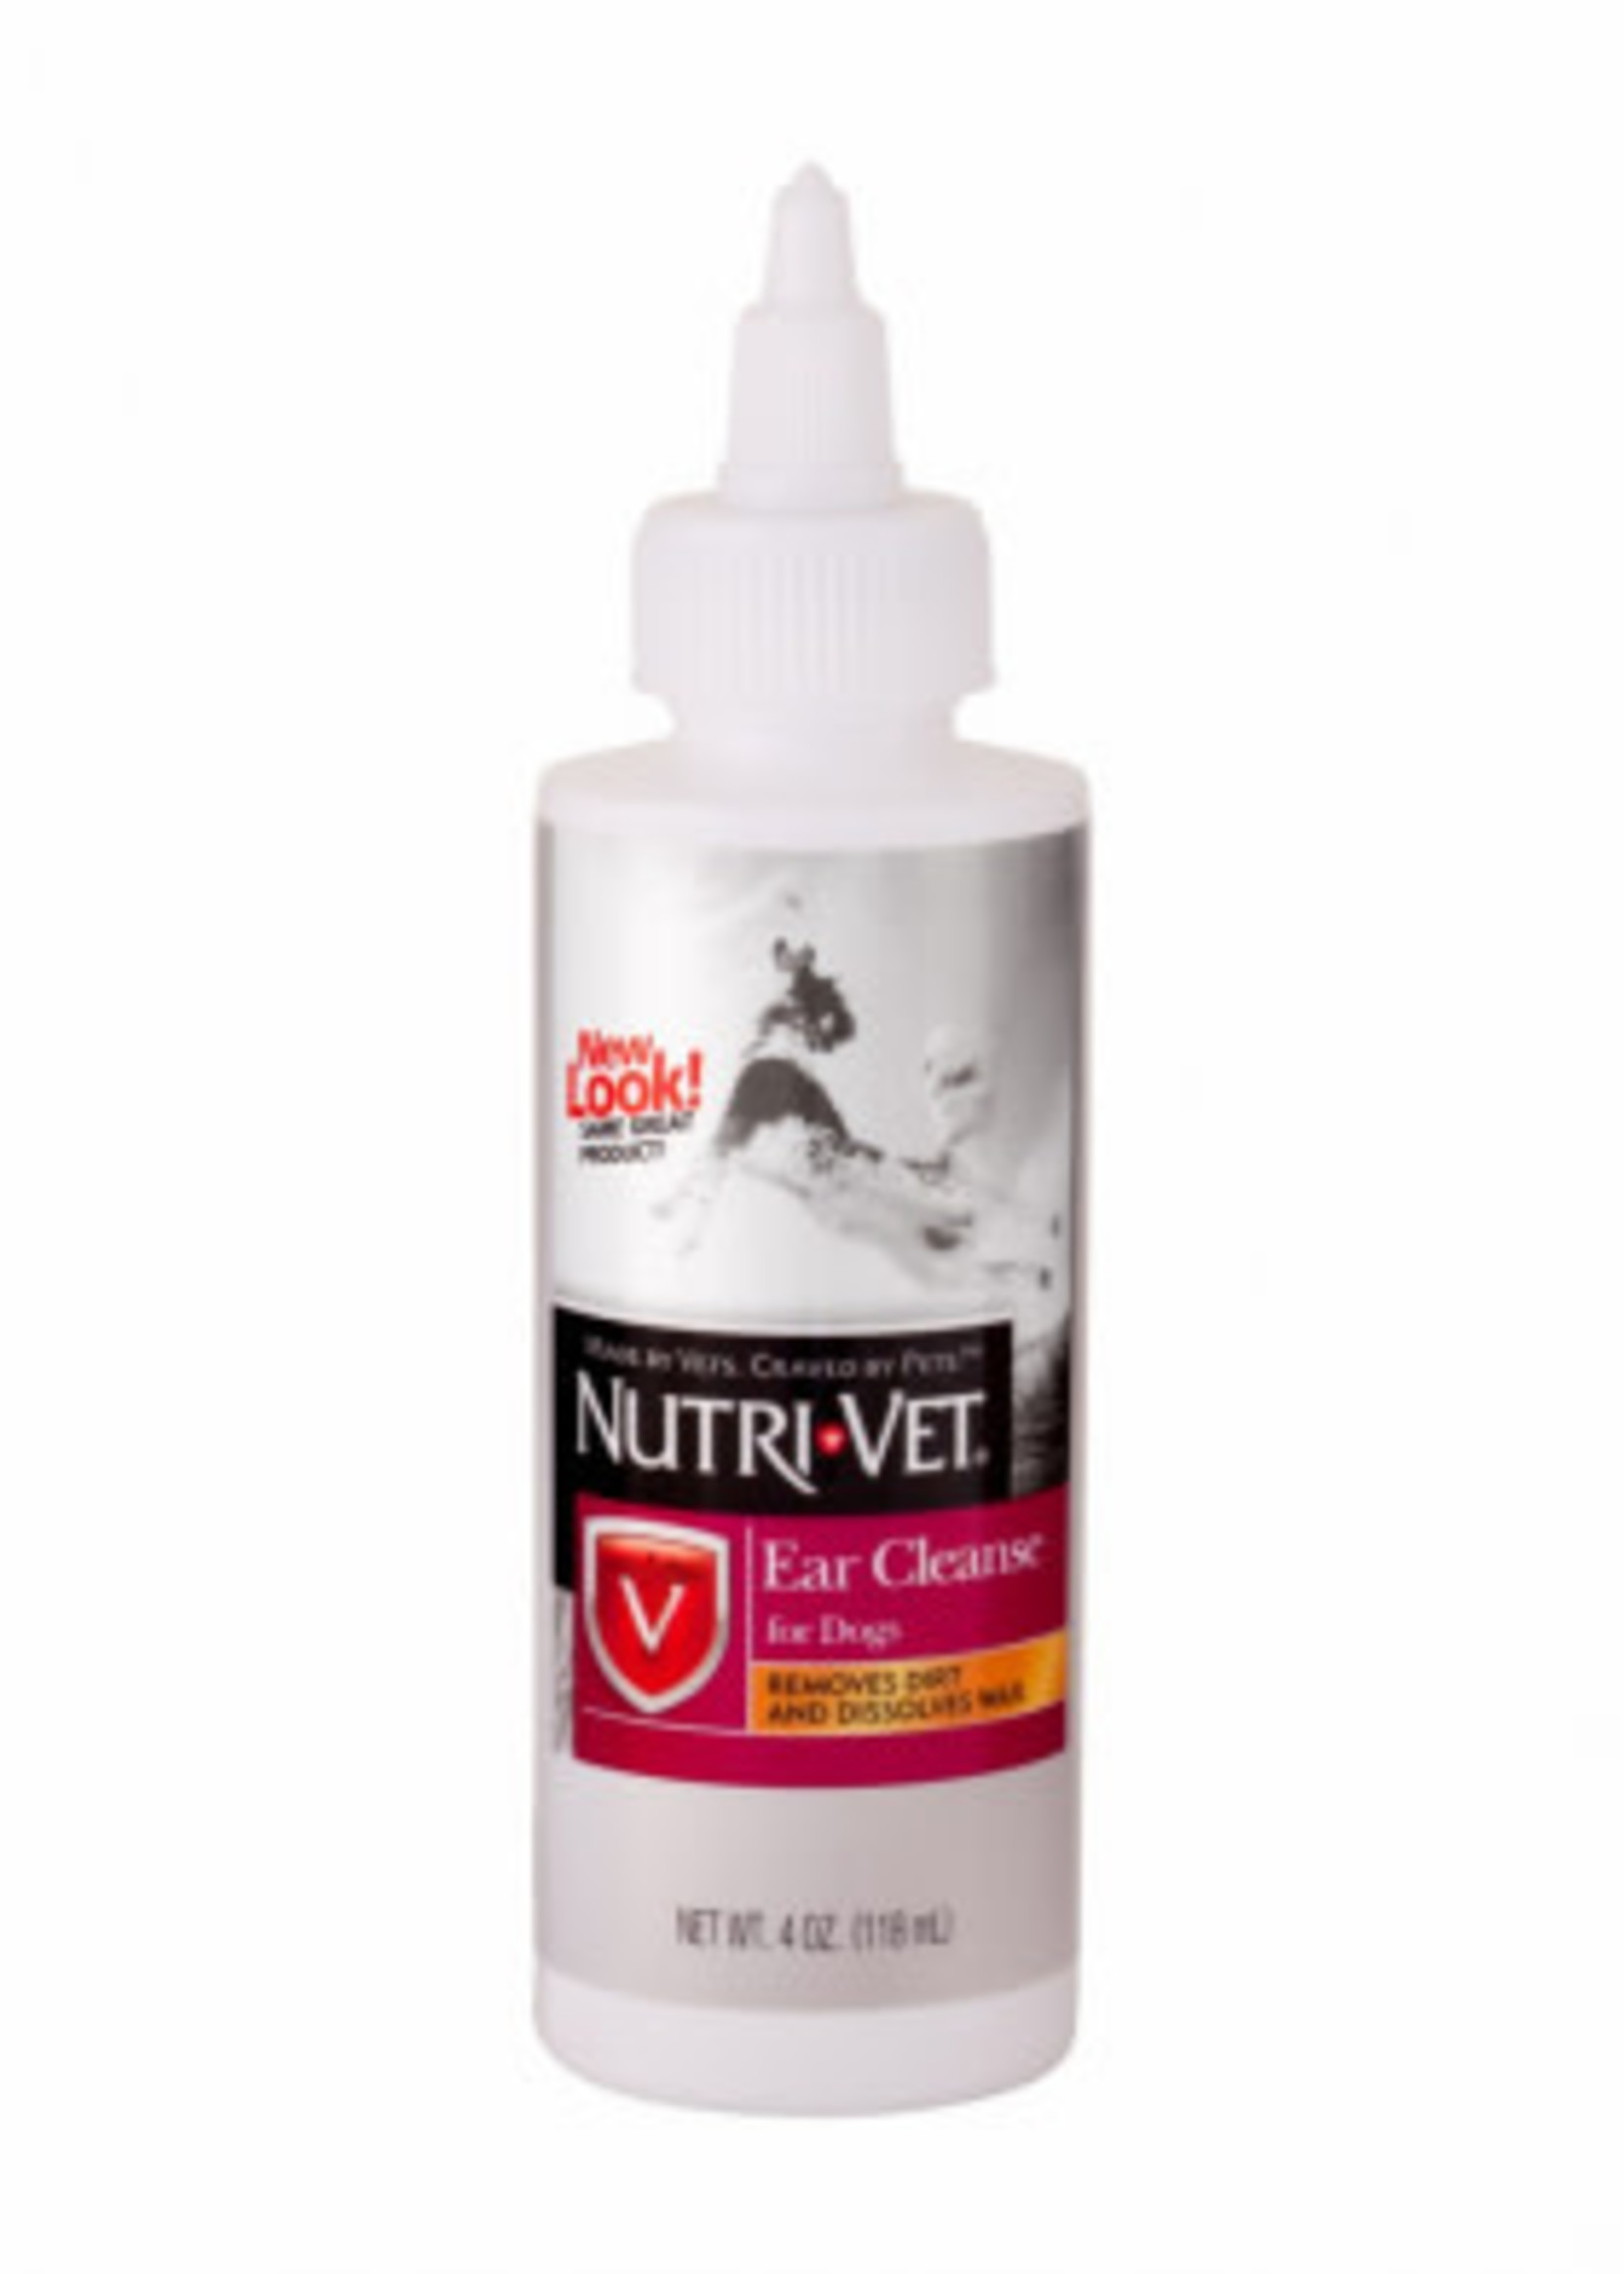 Nutri-Vet® Nutri-Vet® Ear Cleanse for Dogs 4oz